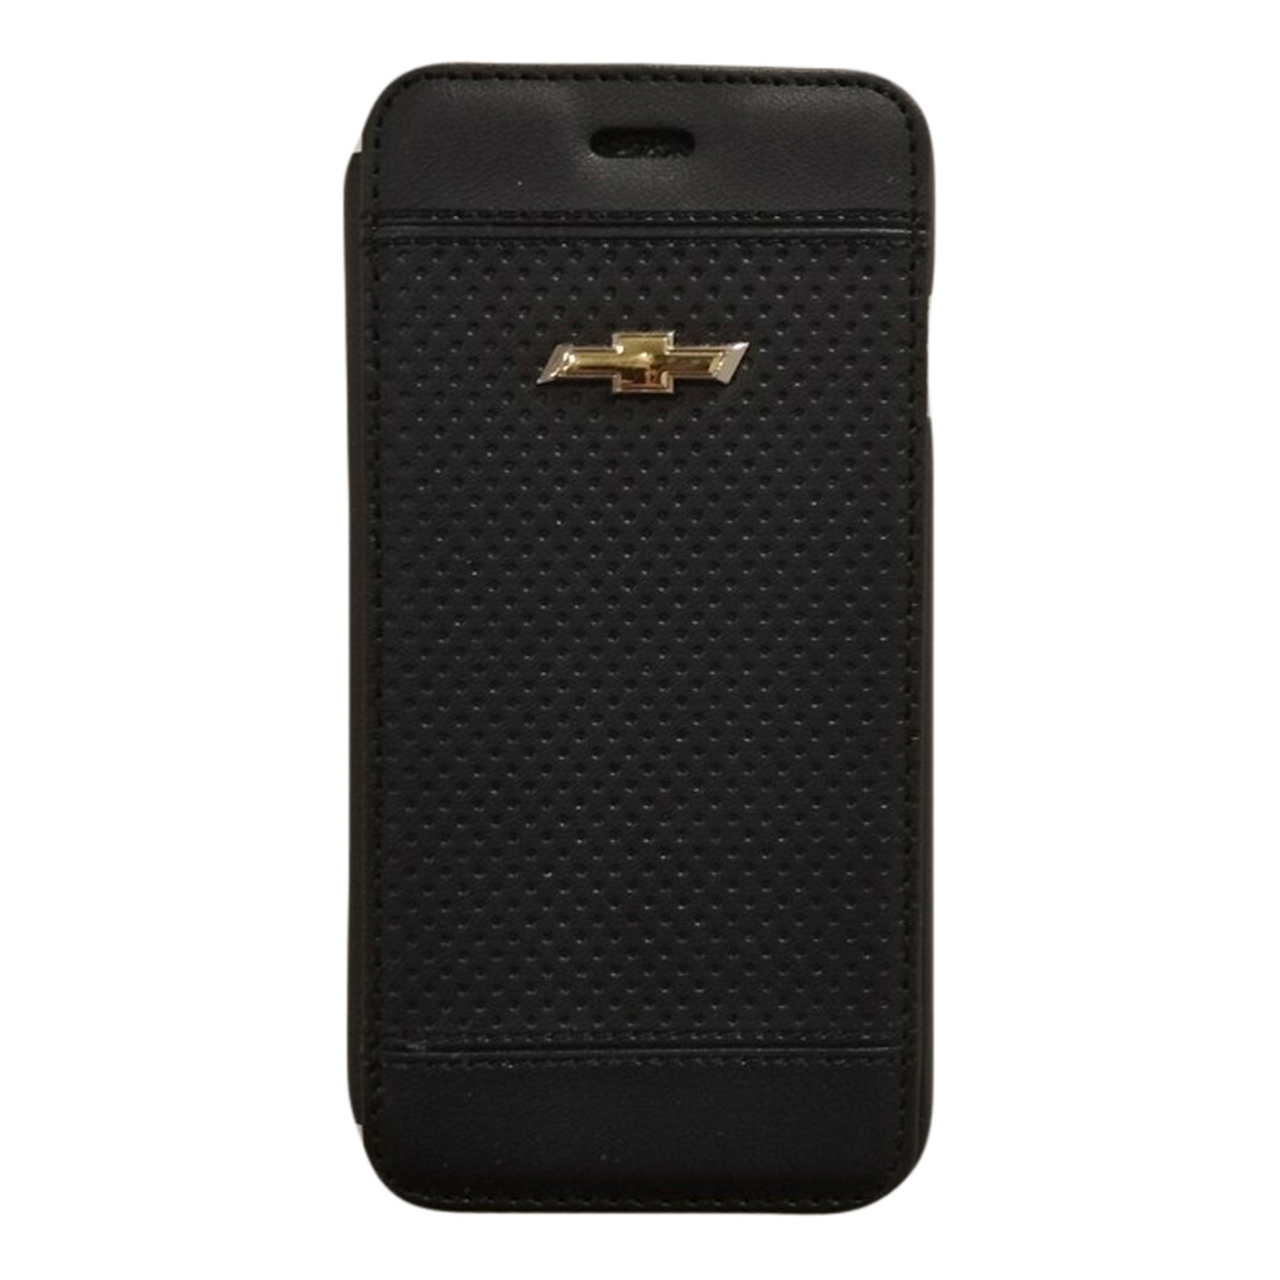 کیف مدل dg66 مناسب برای گوشی موبایل اپل iphone 6